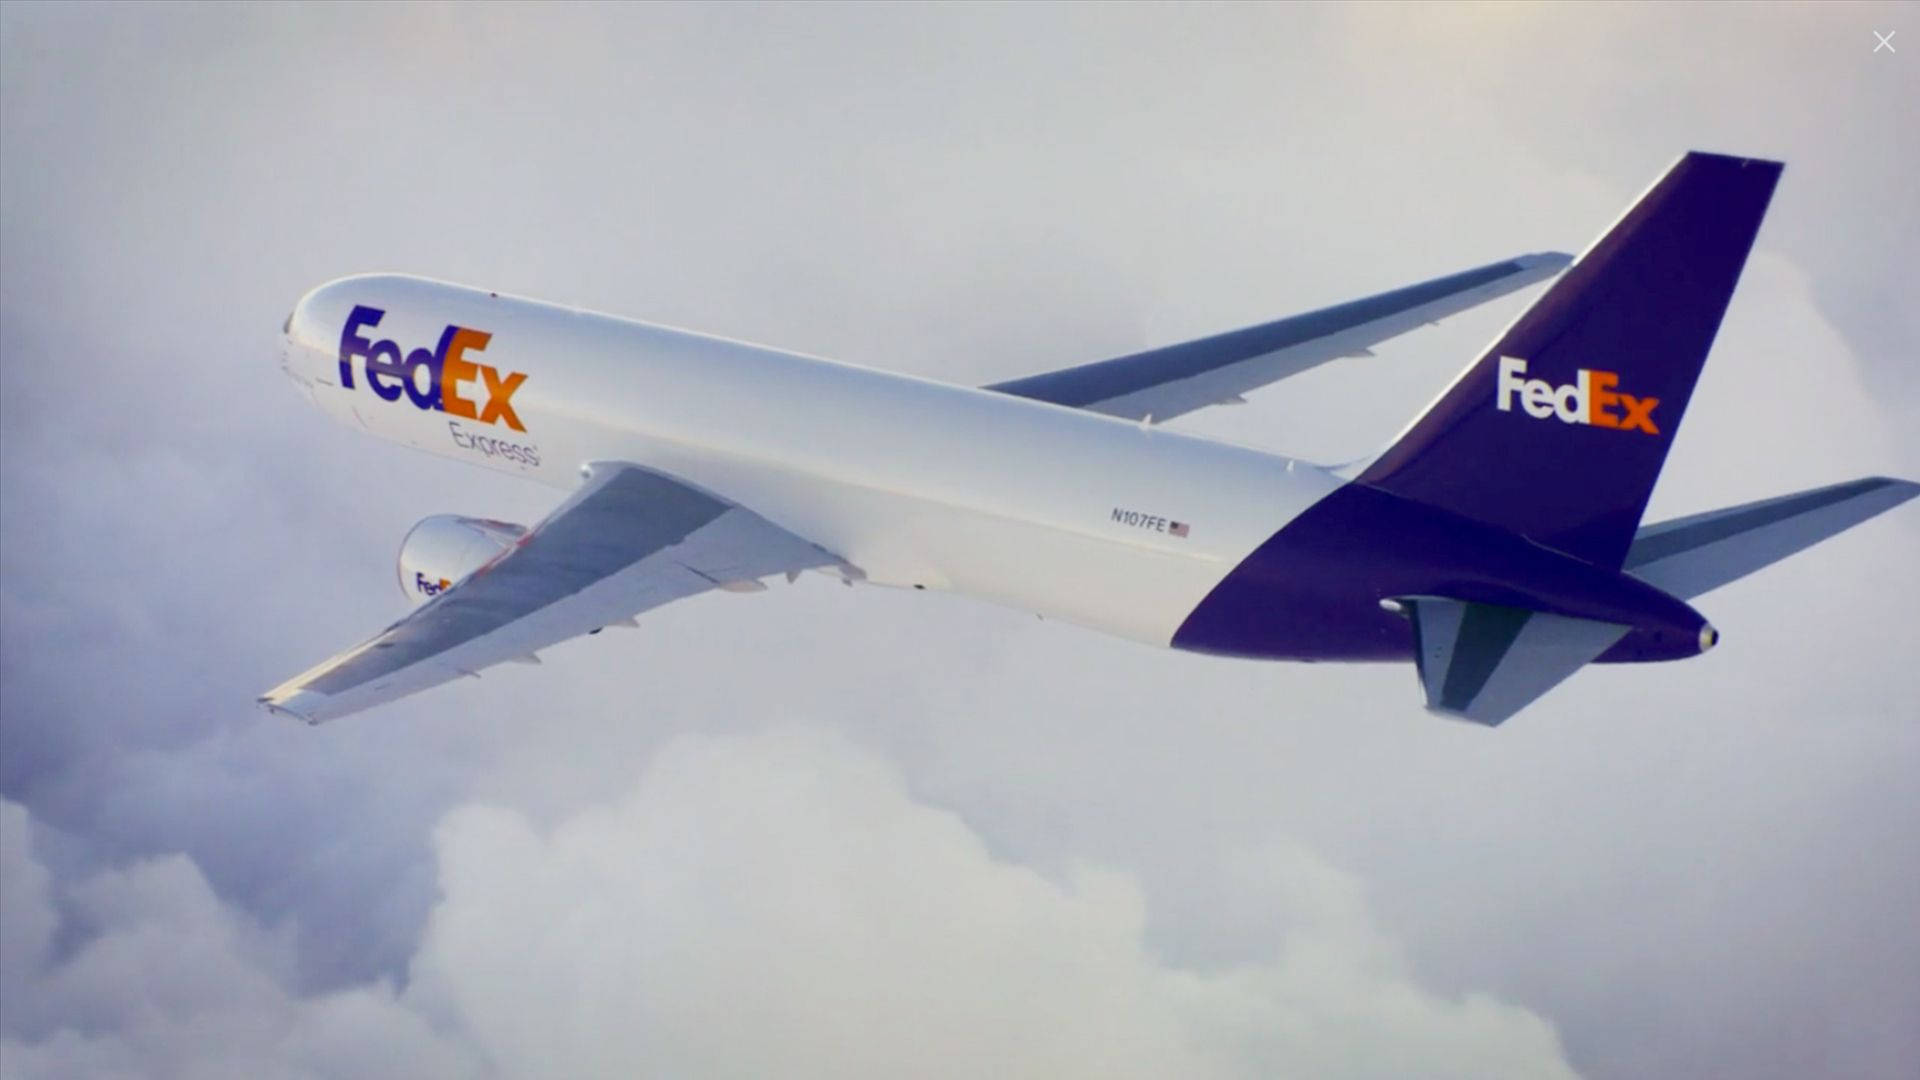 Fedex Express Aircraft Rear View